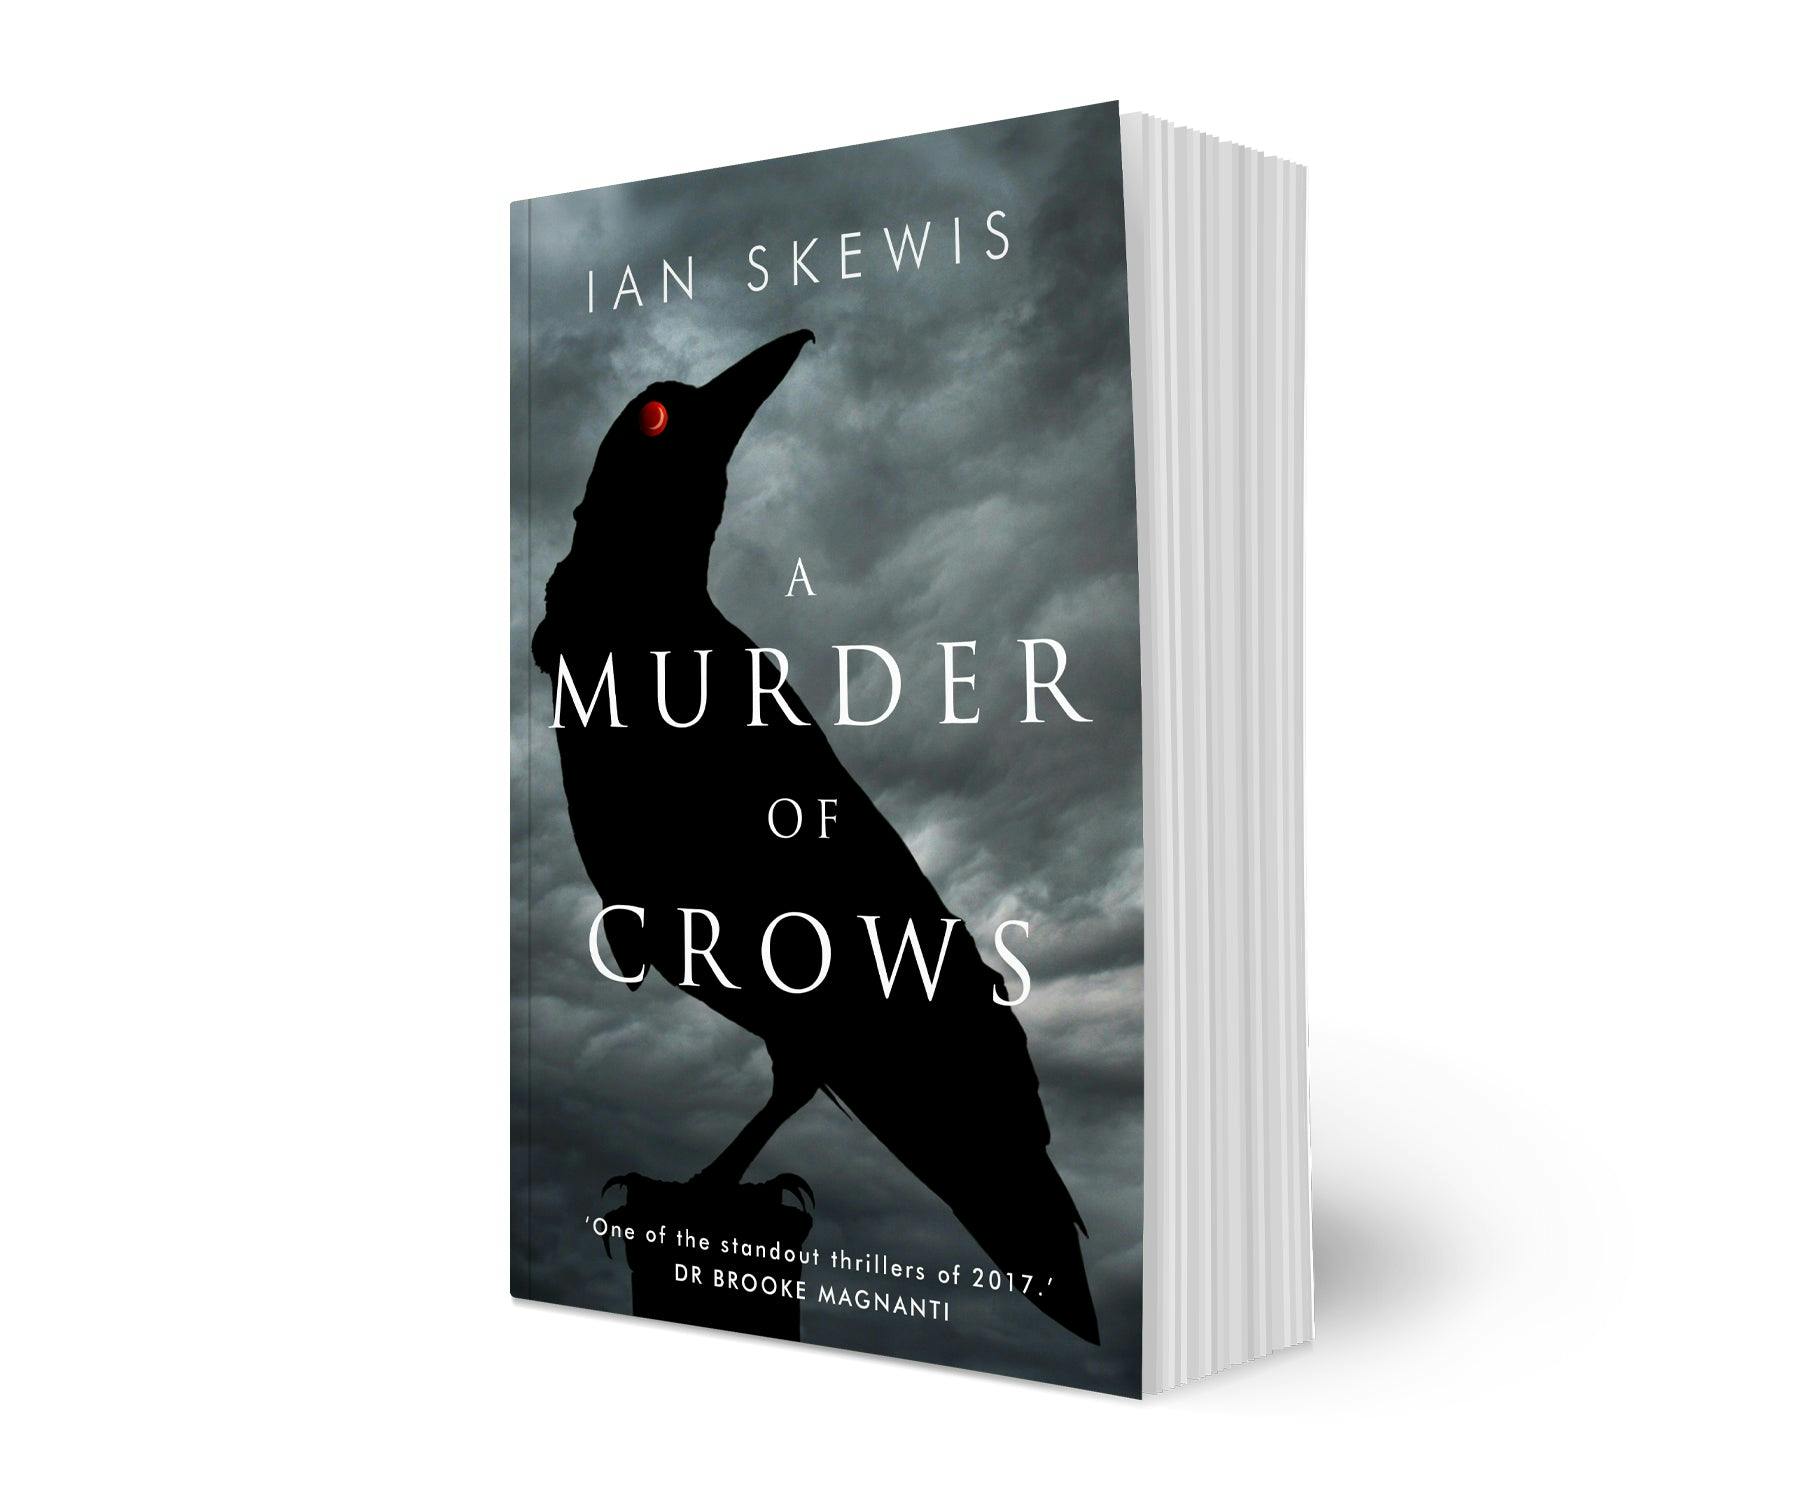 A Murder of Crows by Ian Skewis